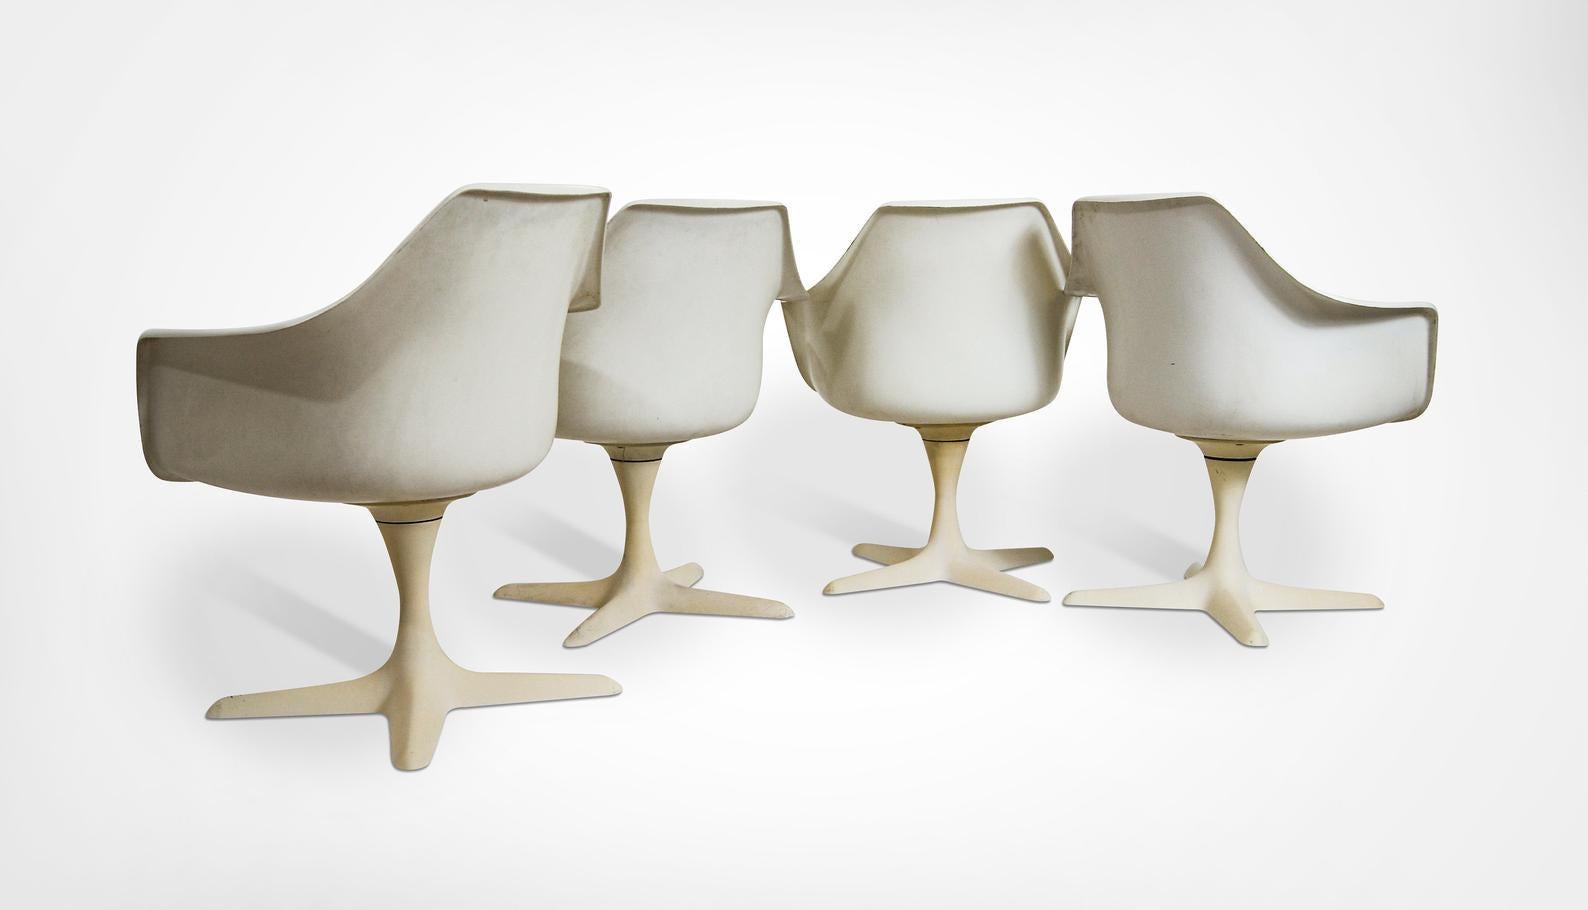 Ensemble de 4 chaises de salle à manger/chaises à bras en fibre de verre du milieu du siècle dernier, par Maurice Burke pour Arkana Furniture GB, vers les années 1960.
Proposé ici dans son état d'origine.
Les sièges sont en fibre de verre et les